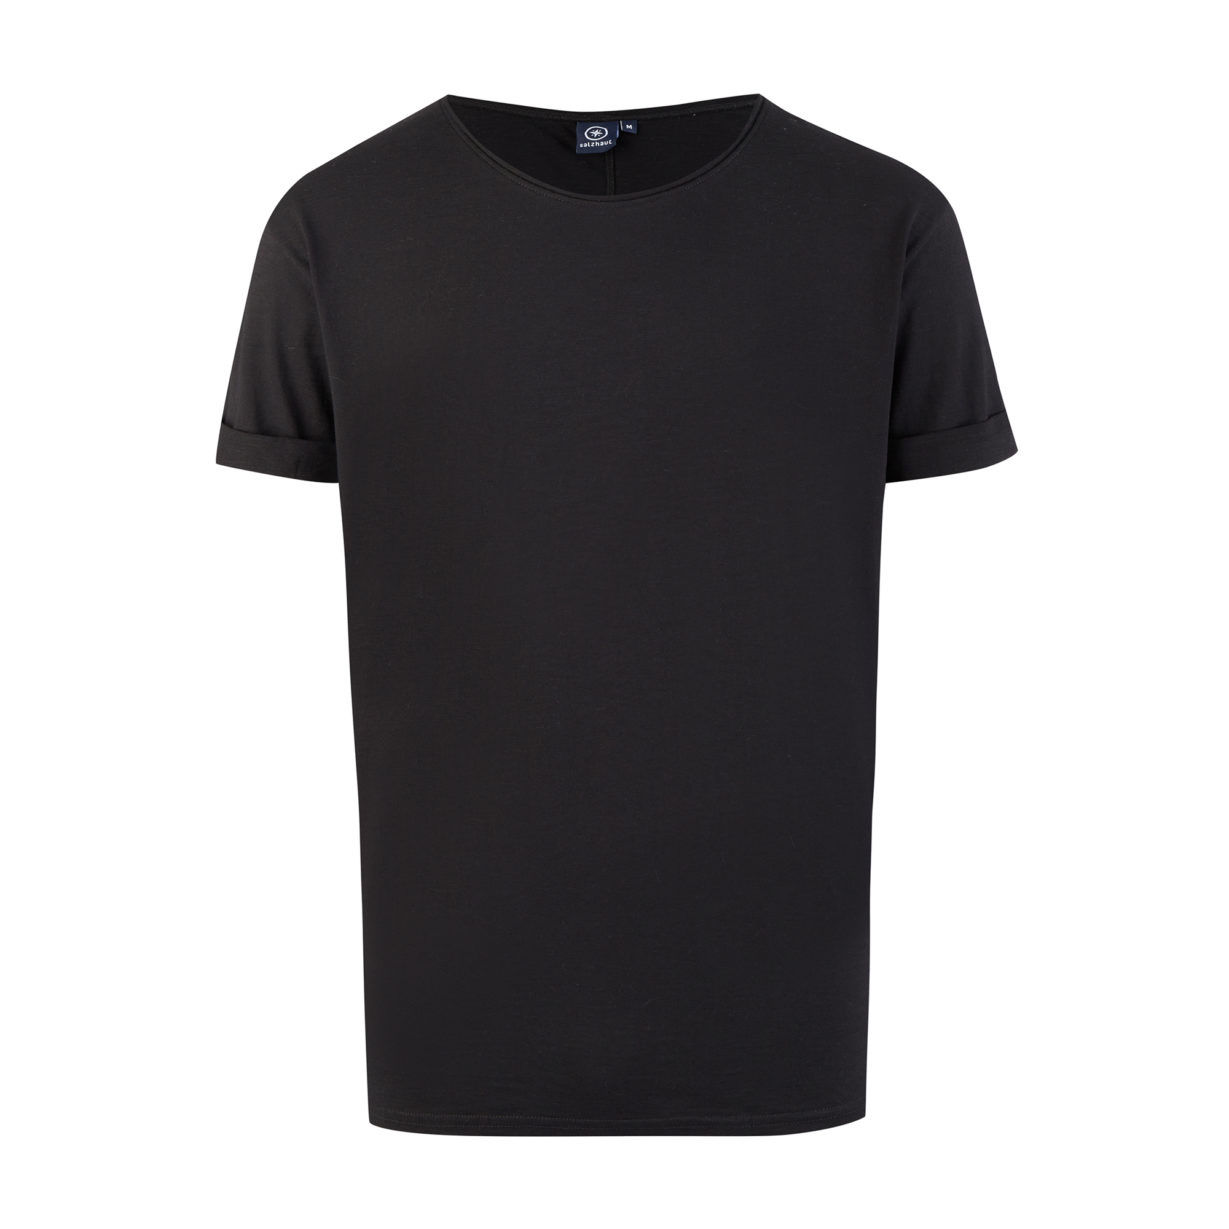 Kimm T-Shirt Black